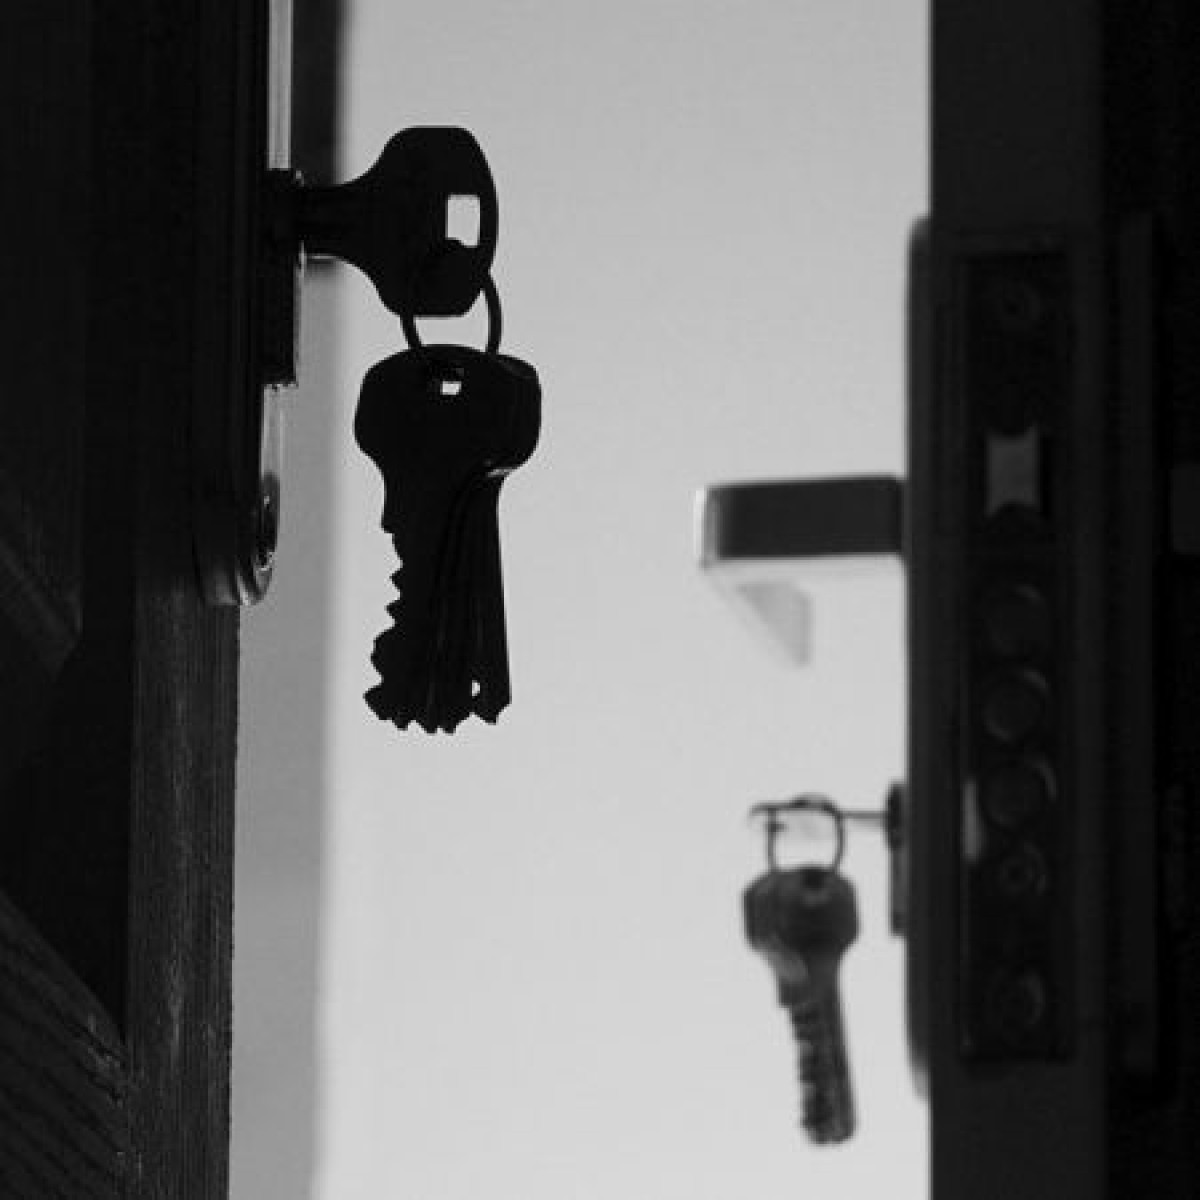 Со скрипом открылась дверь. Закрытая дверь. Запертая дверь. Двери закрываются. Открывает дверь ключом.